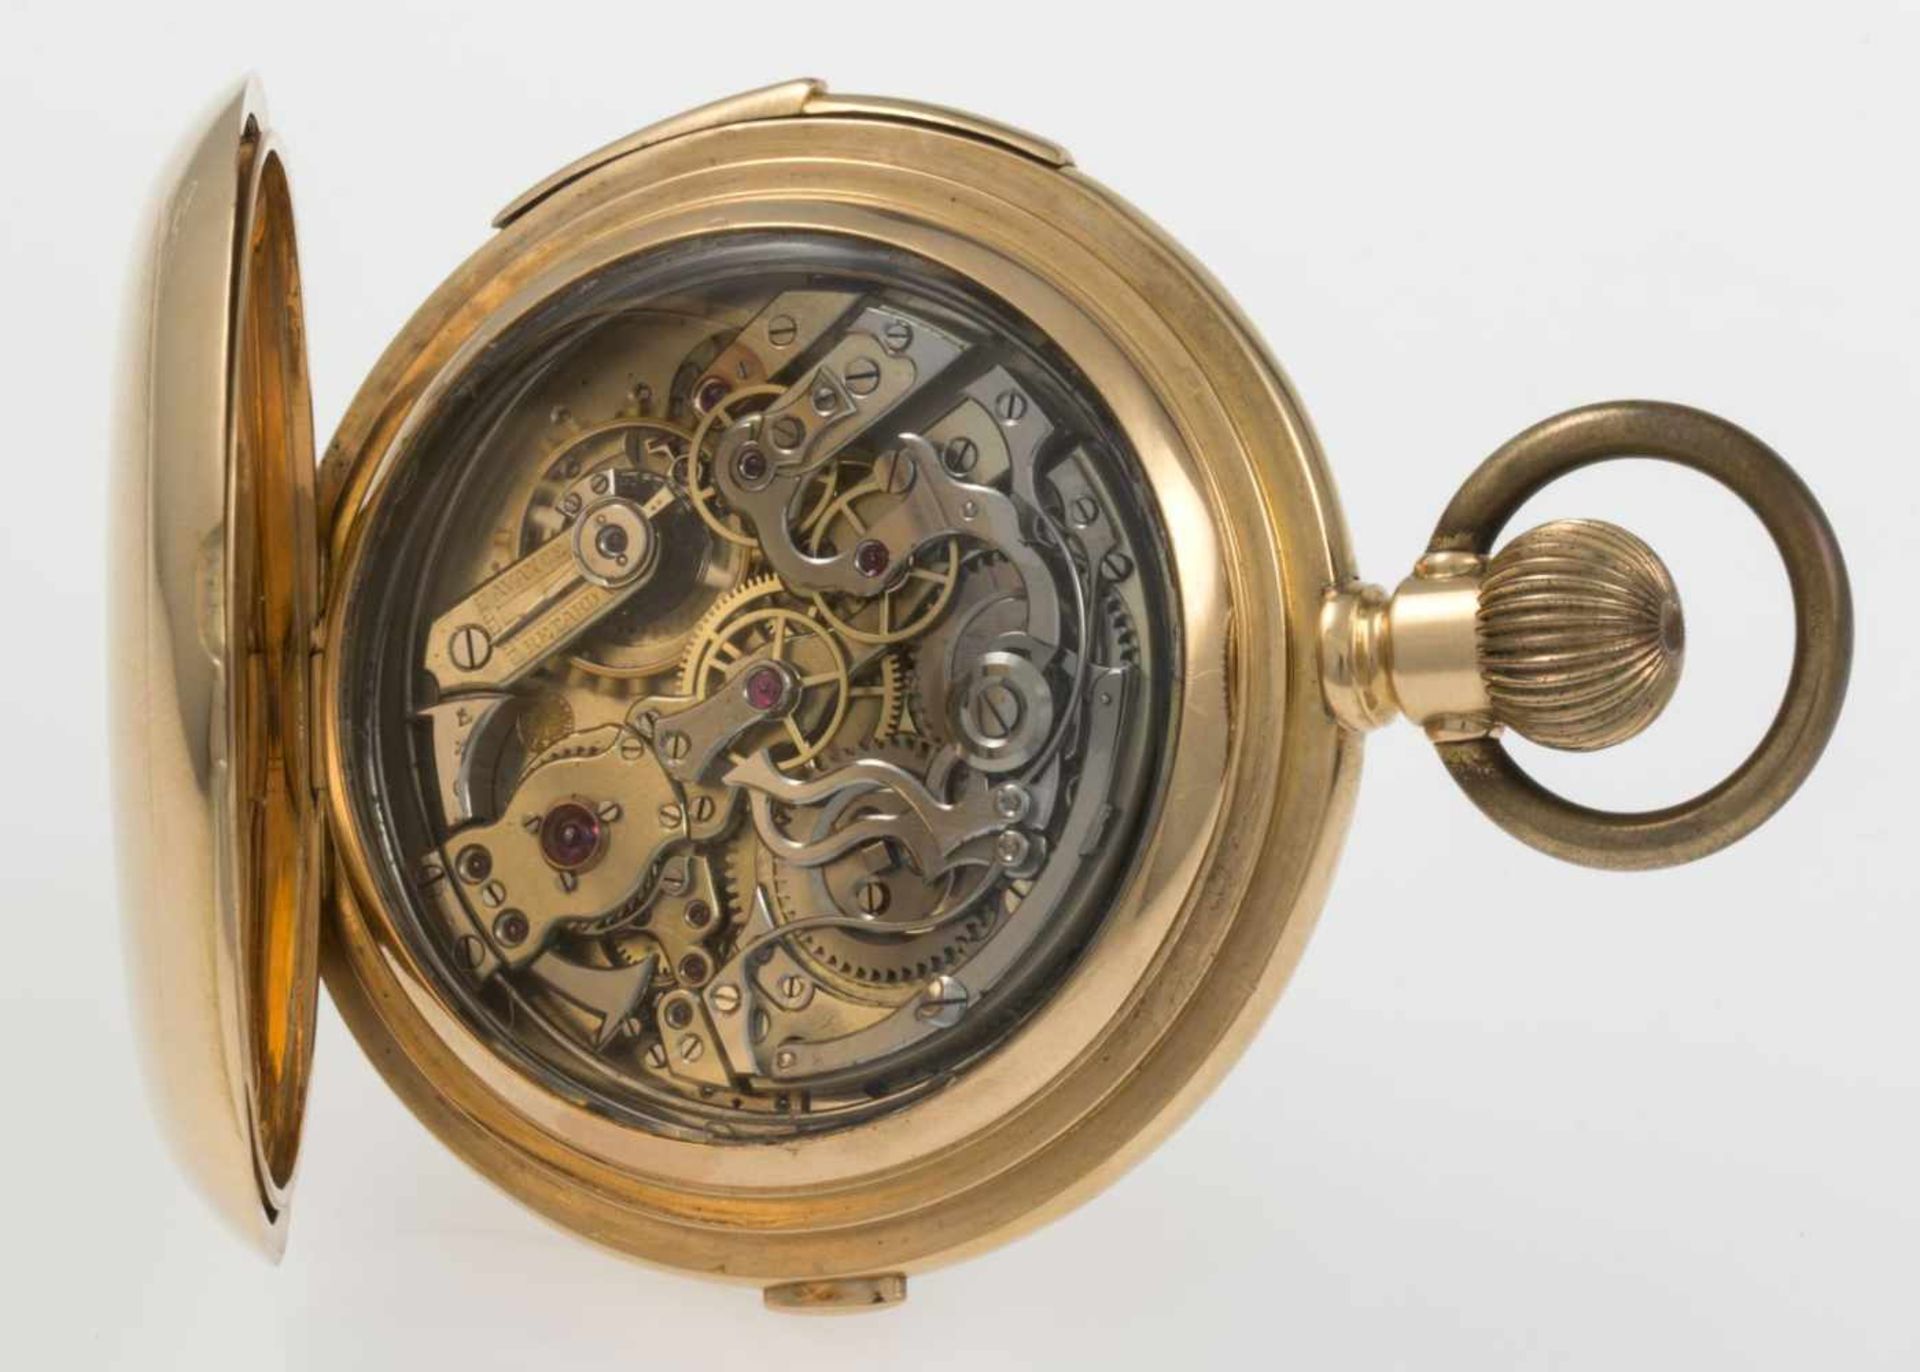 Sprungdeckel-Chronograph von Humbert Ramuz mit ViertelrepetitionGehäuse und Cuvette aus Gelbgold - Bild 6 aus 10